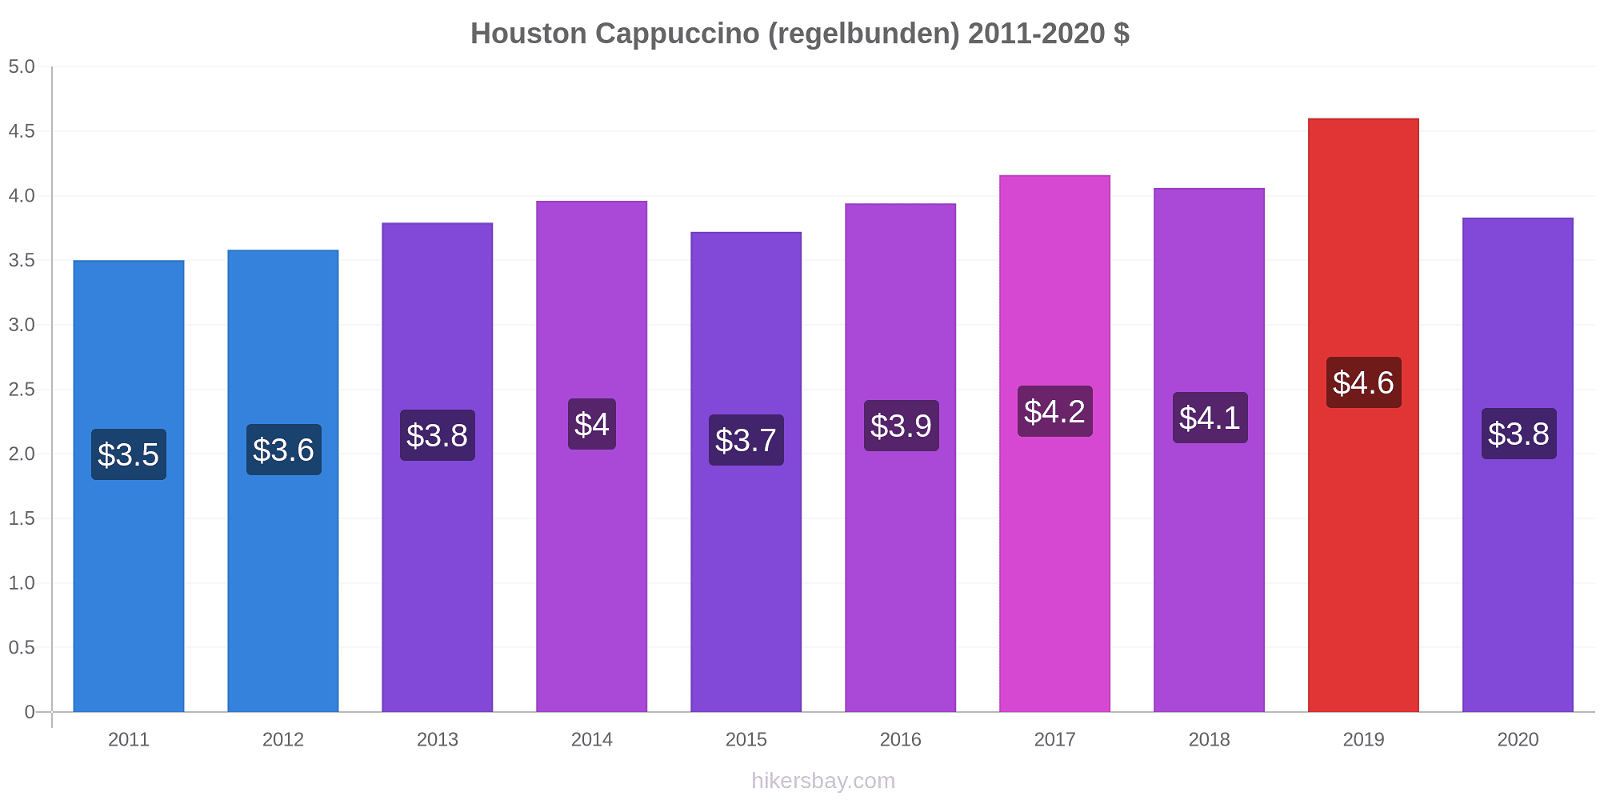 Houston prisförändringar Cappuccino (regelbunden) hikersbay.com